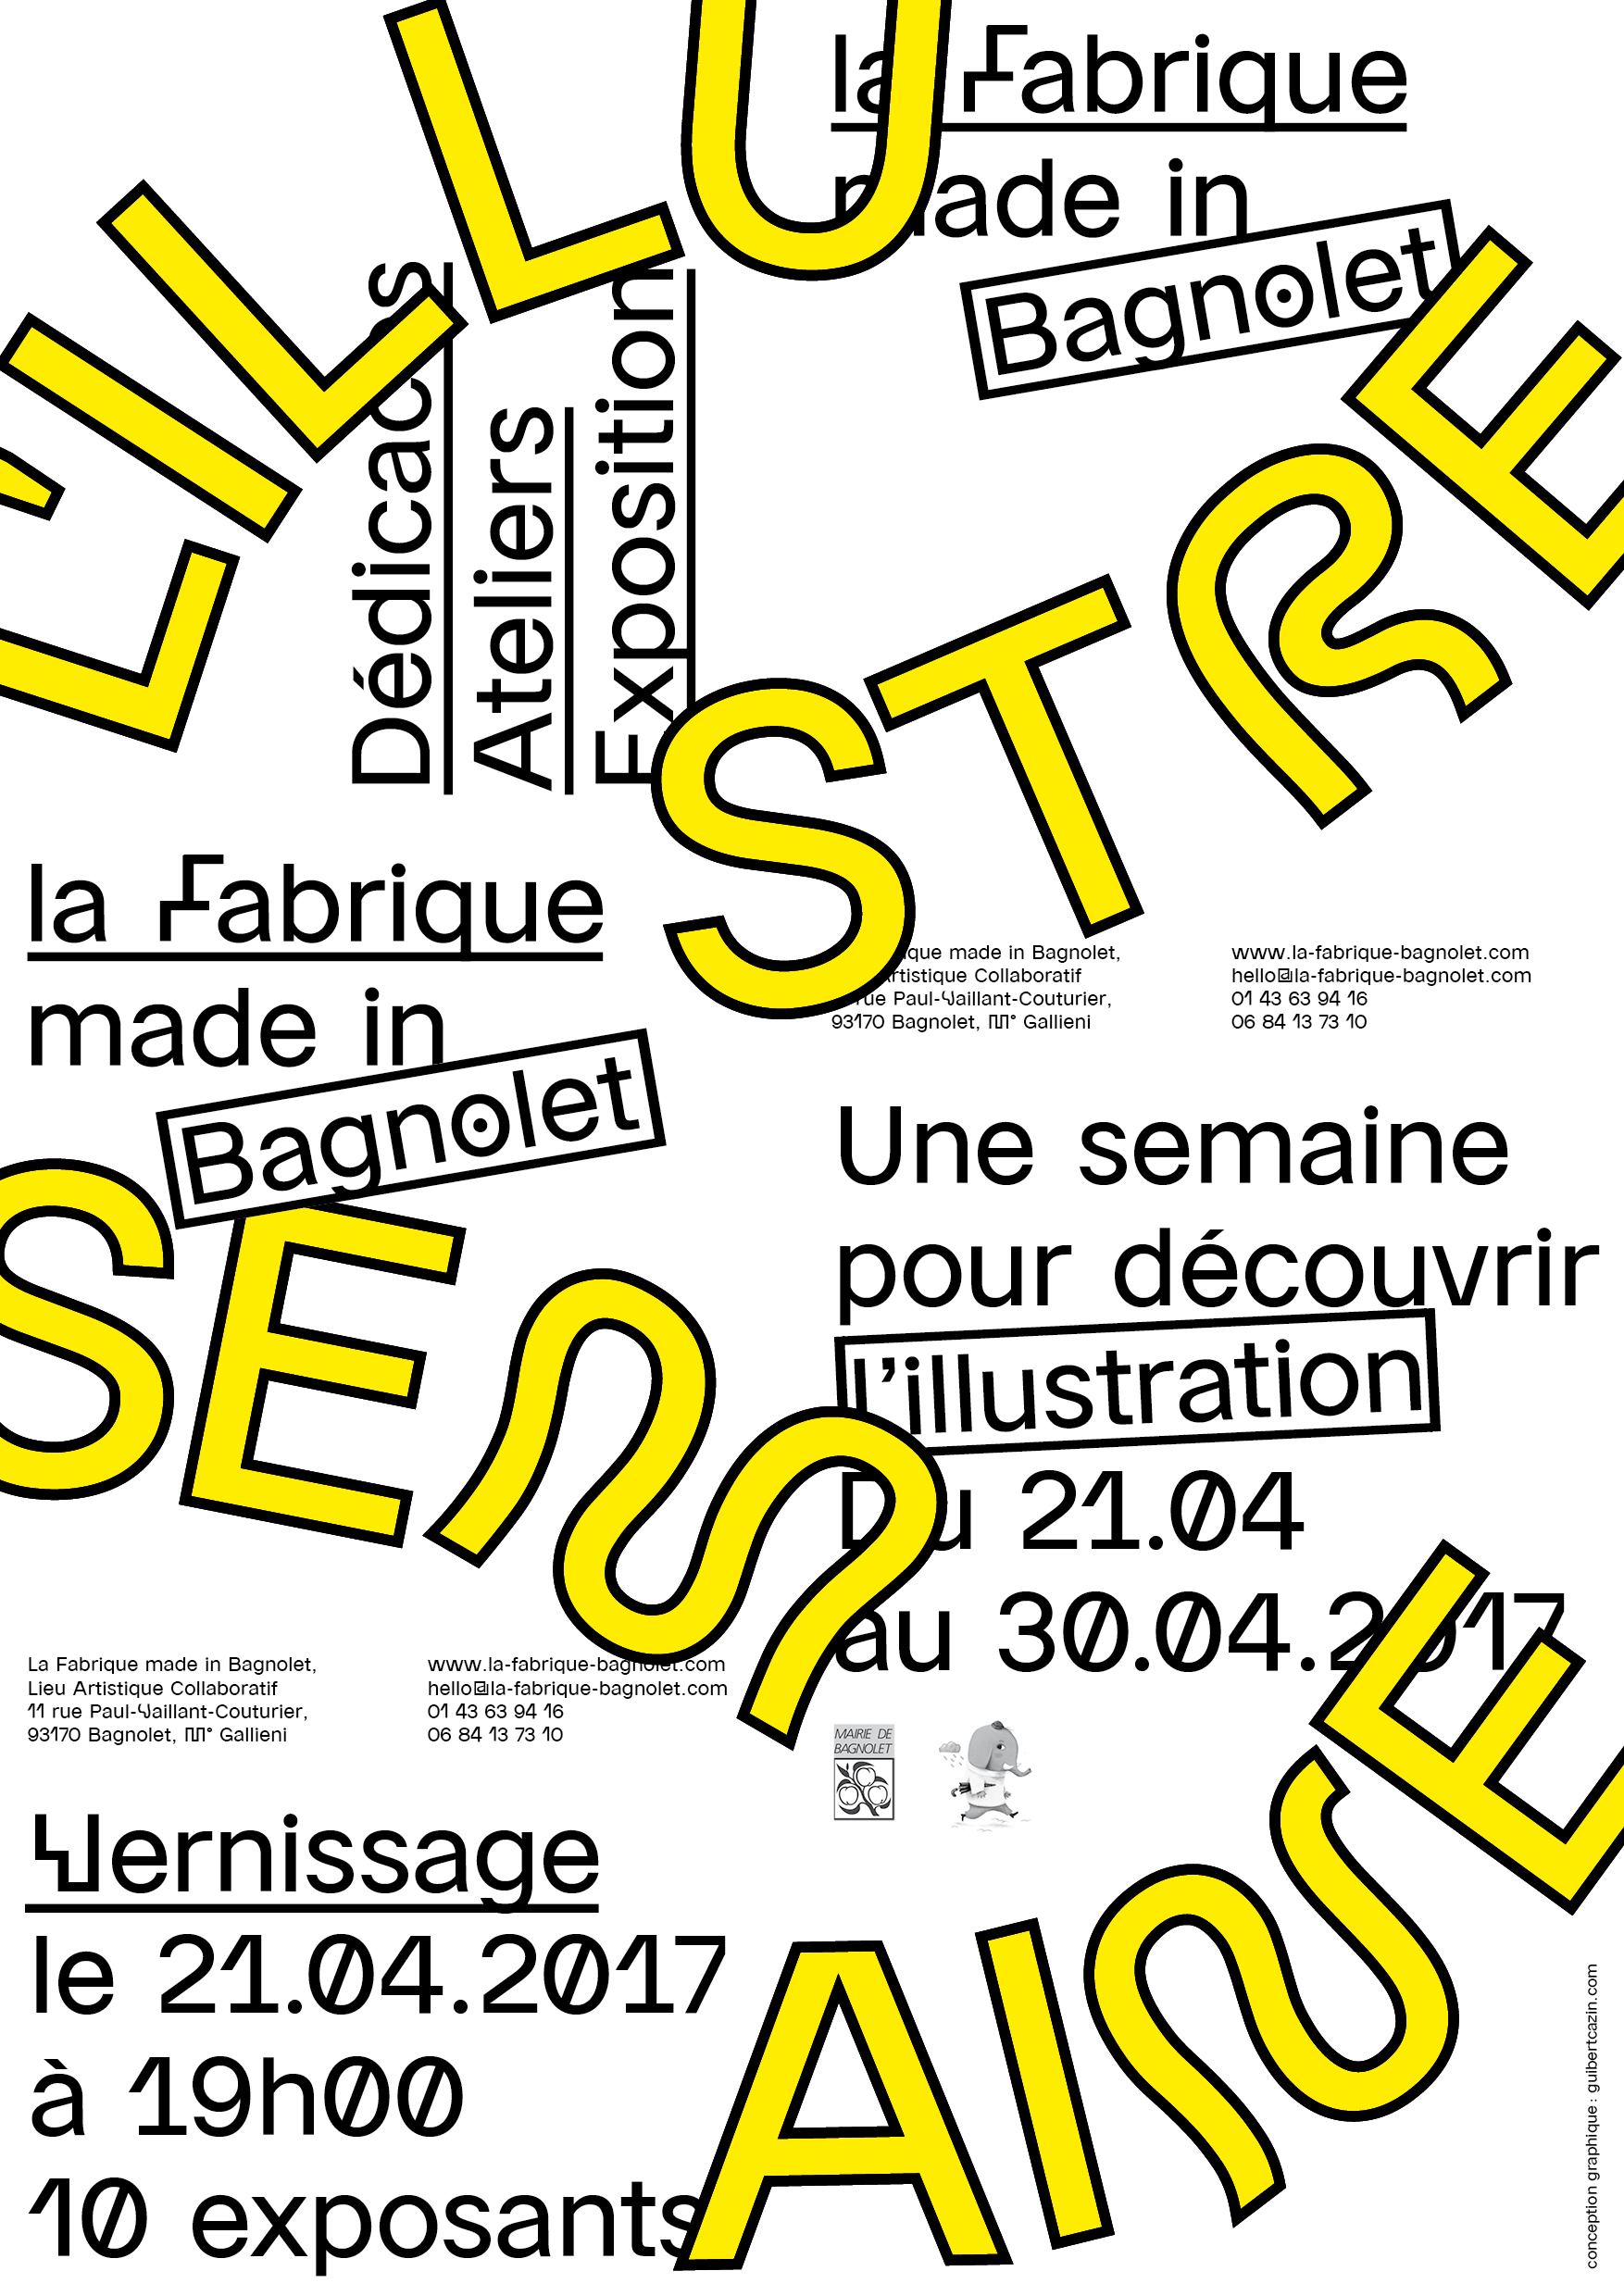 L'ILlustre Semaine: une semaine pour découvrir l'Illustration à LA Fabrique made in Bagnolet 